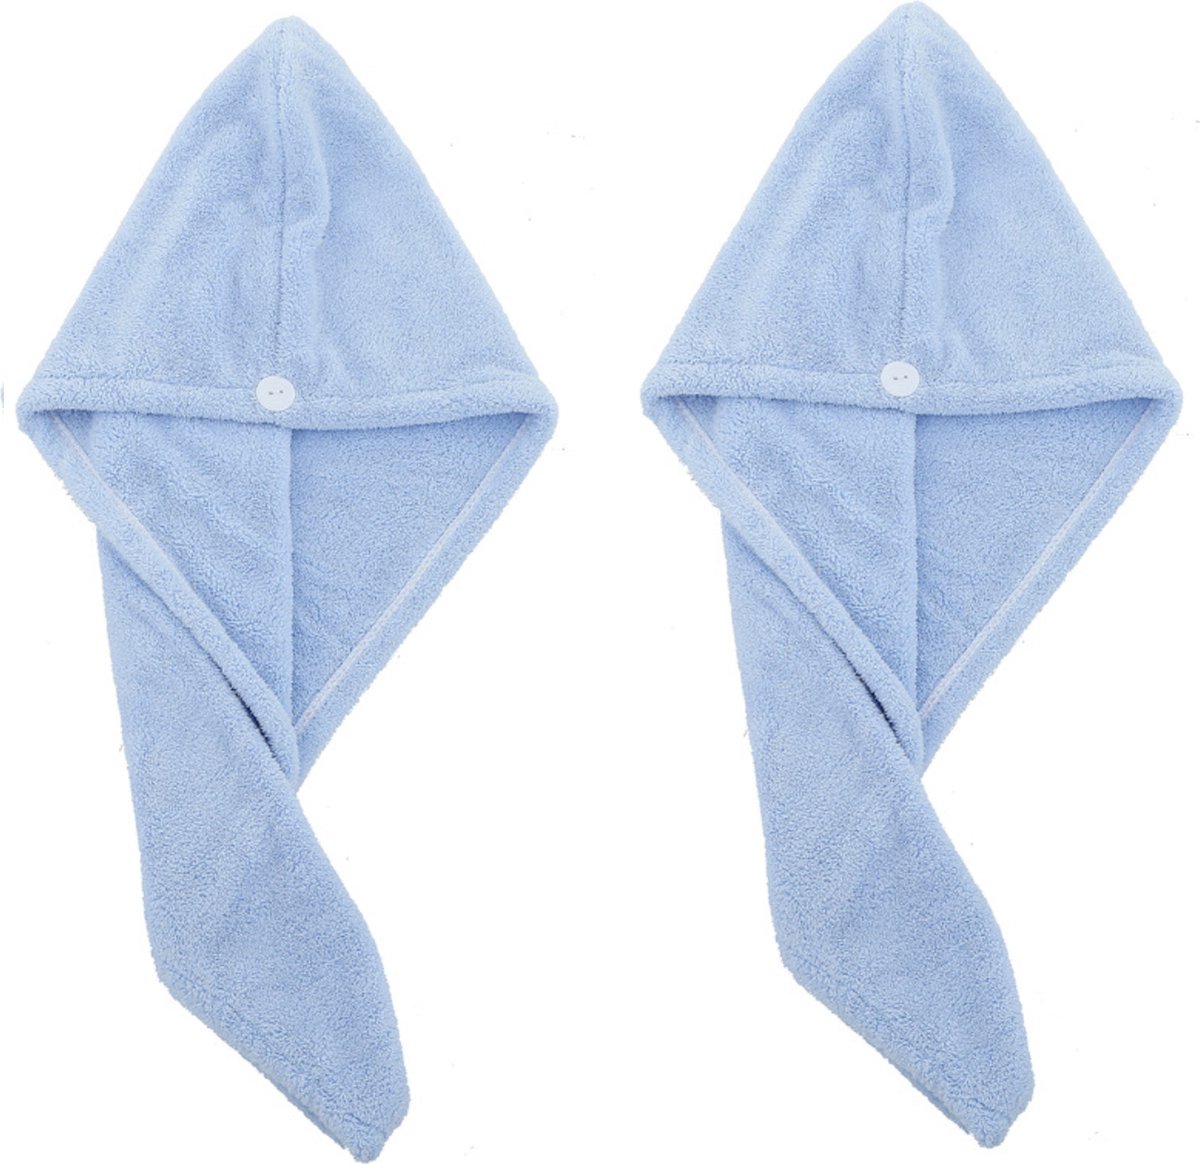 2x Haarhanddoek - Hoofdhanddoek - Hair towel - Sneldrogende handdoek - Haardroger - Haar handdoek - Blauw